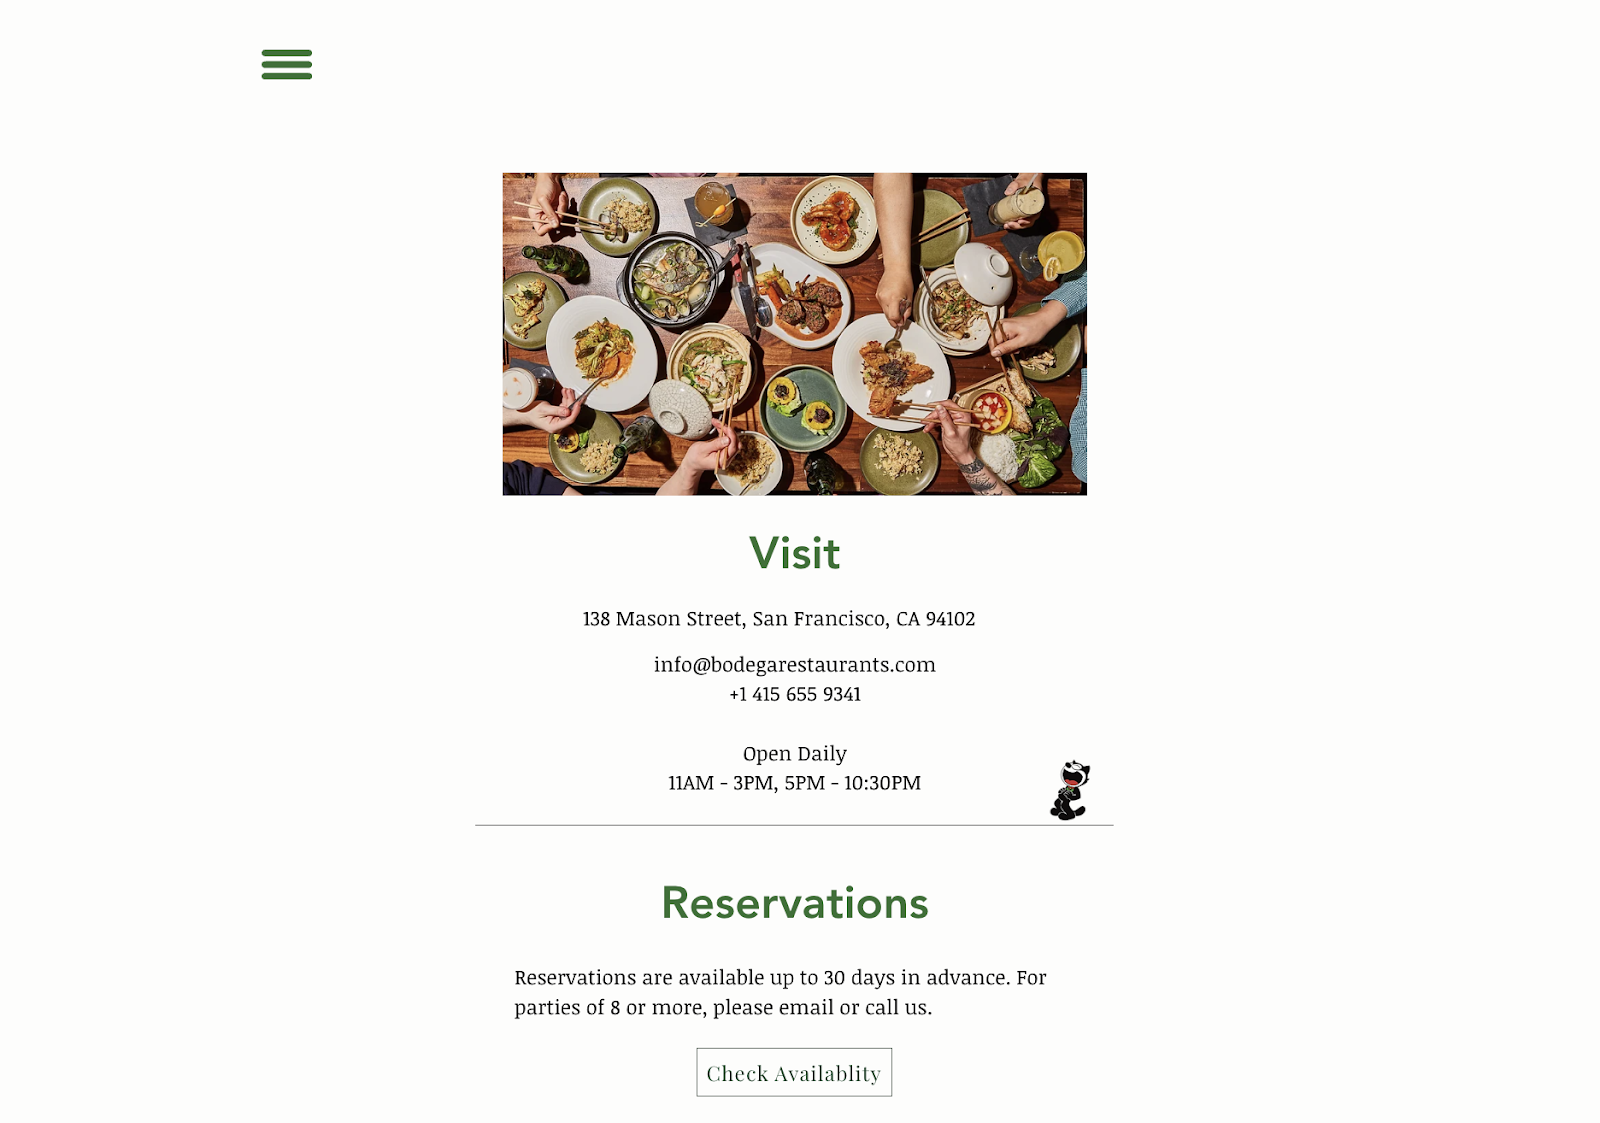 ایده های بازاریابی رستوران: یک وب سایت ساده برای رستوران Bodega در سانفرانسیسکو. صفحه وب شامل اطلاعات تماس، ساعات کاری و لینک رزرو می باشد.